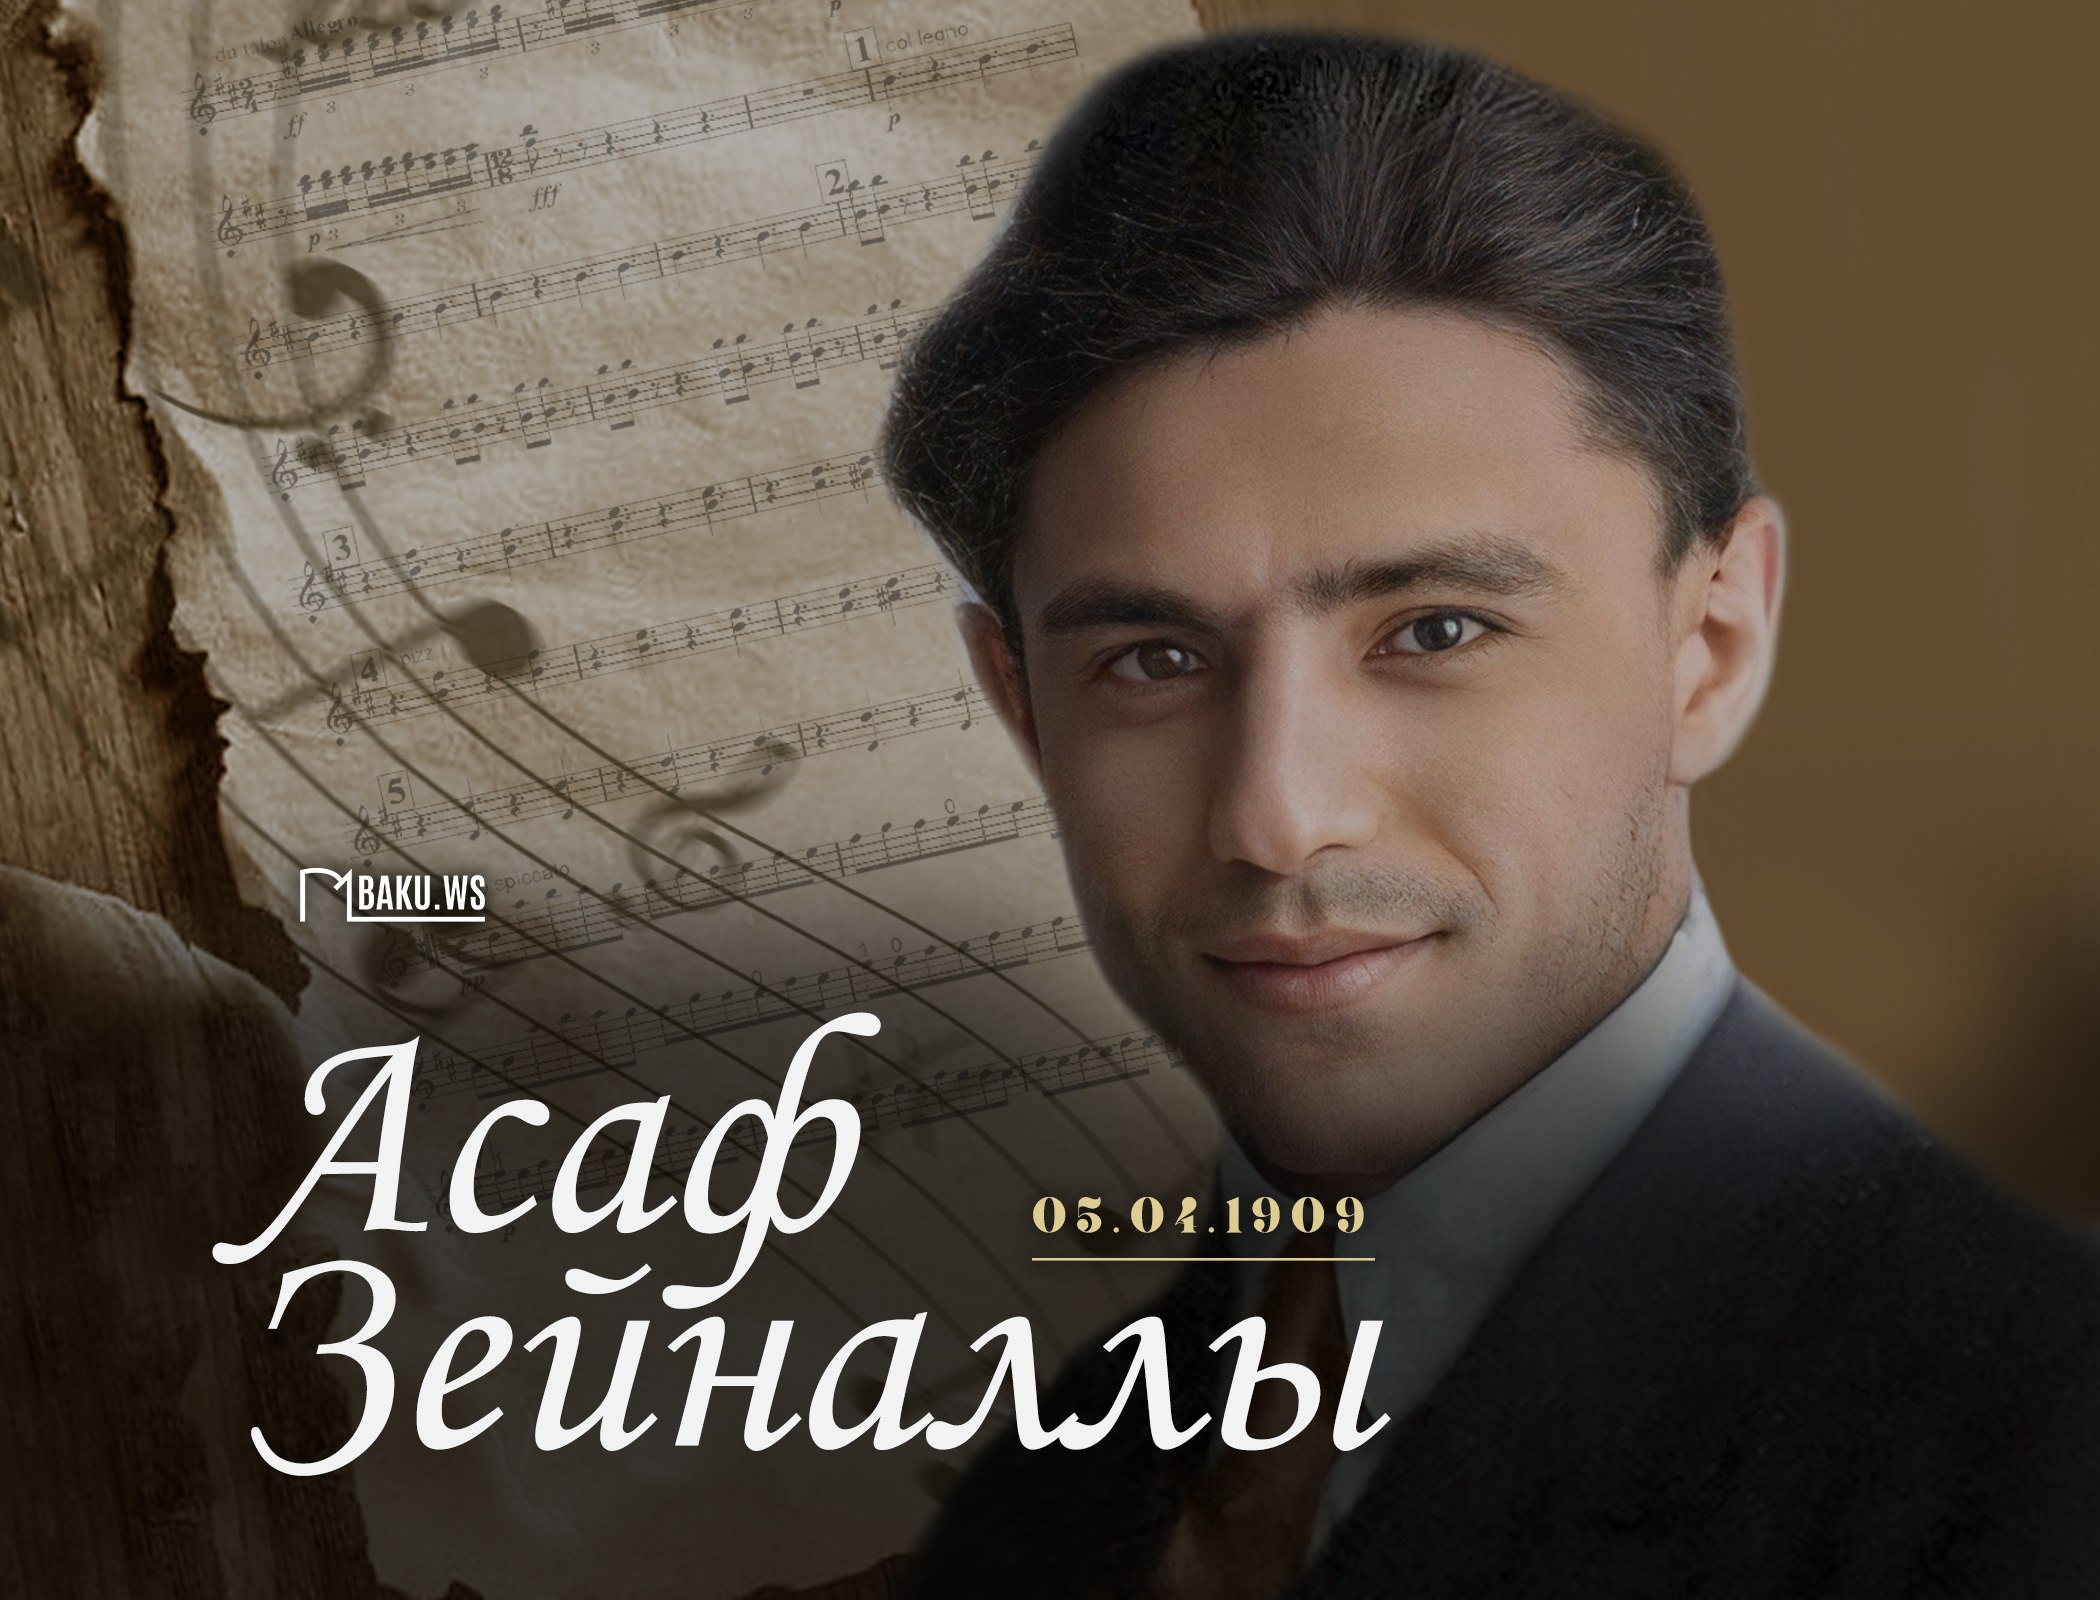 Сегодня исполняется 114 лет со дня рождения выдающегося композитора Асафа Зейналлы